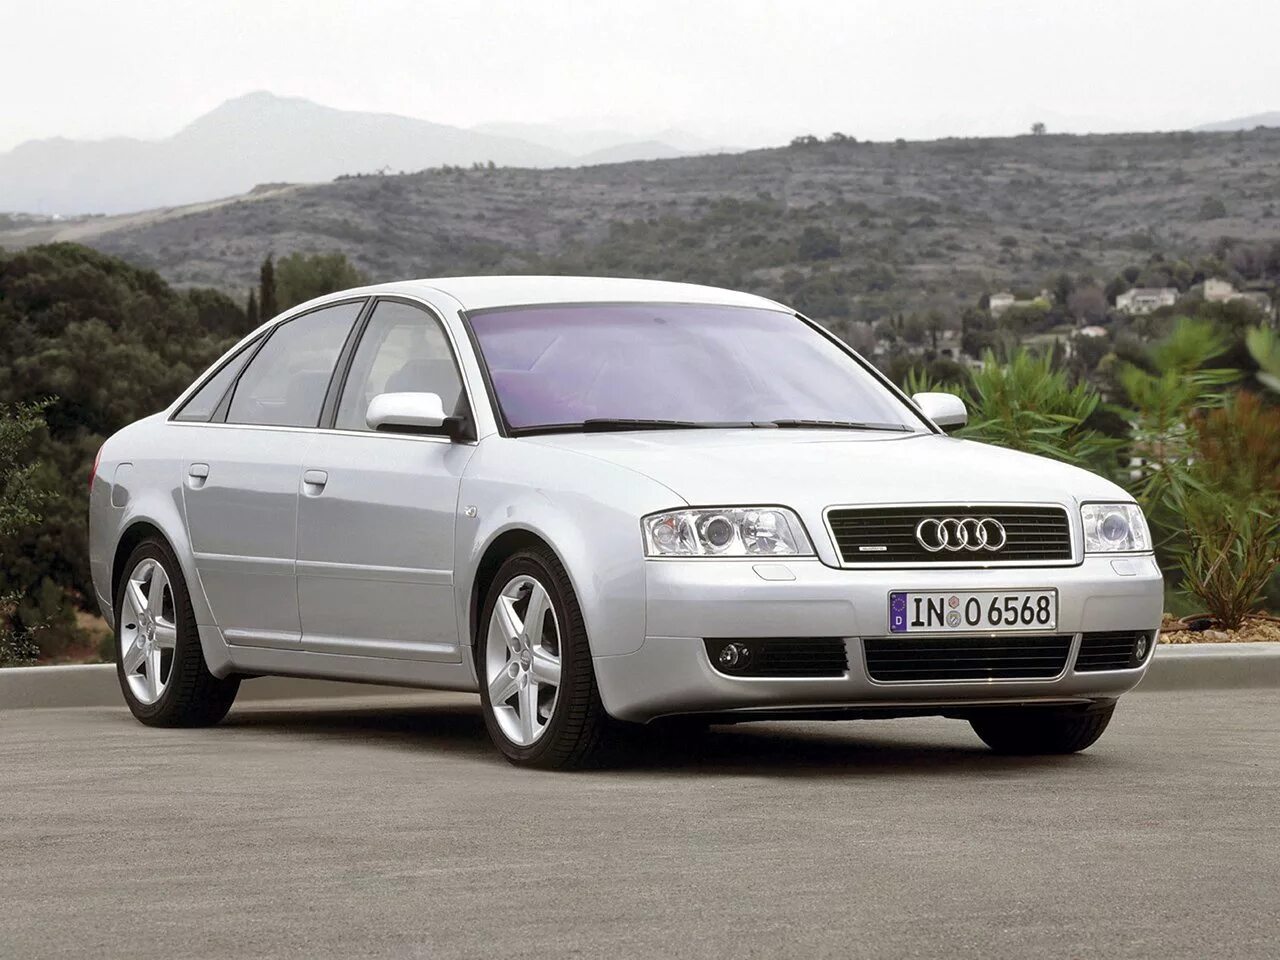 Ауди а6 с5 2001 год. Audi a6 c5 2004. Audi a6 II (c5). Audi a6 c5 седан. Audi a6 2002.